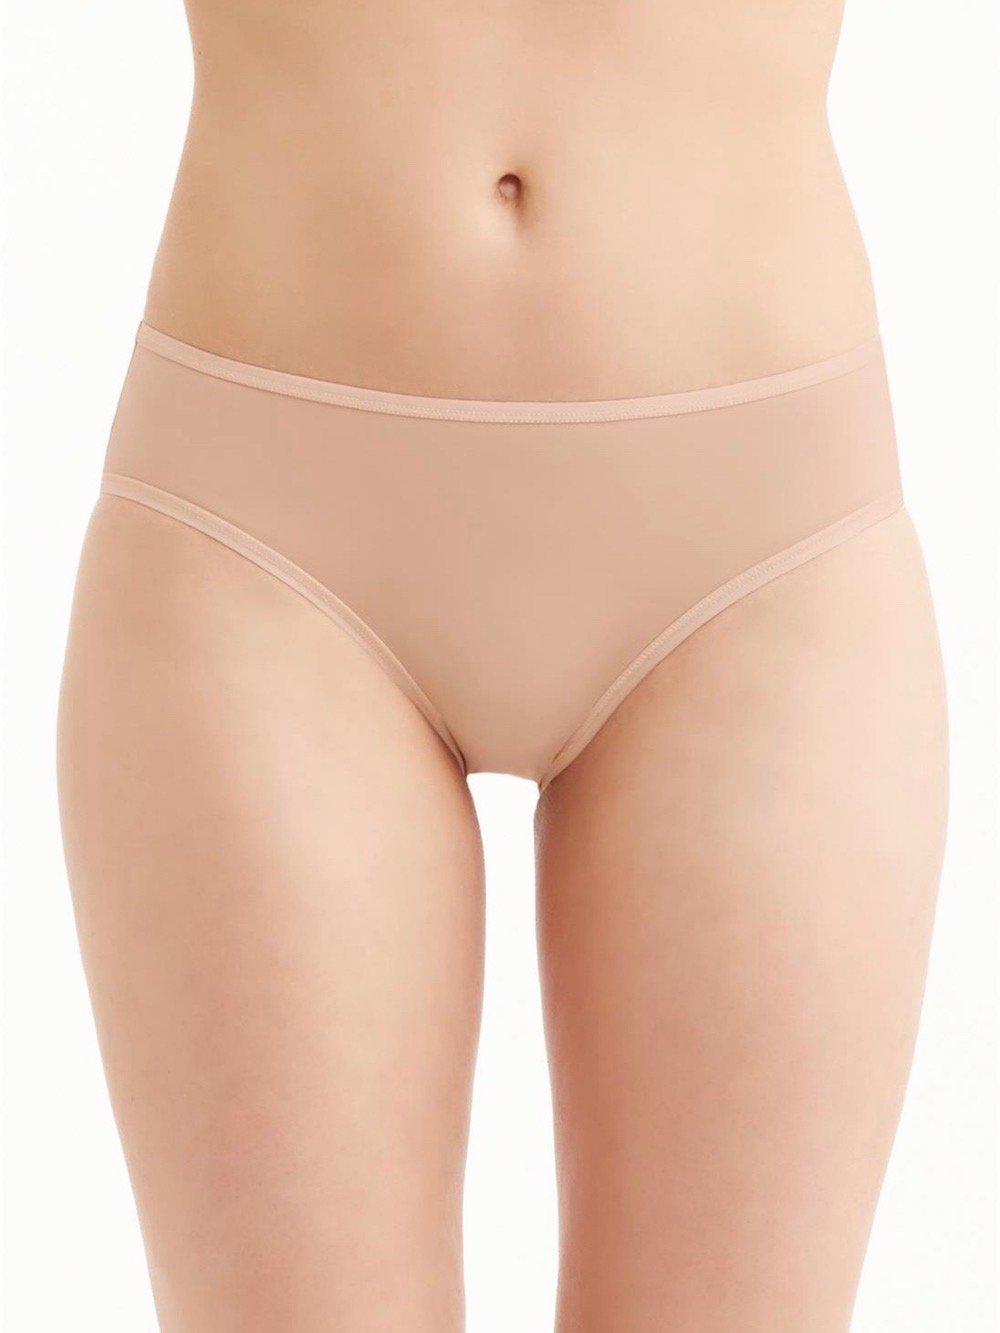 Montelle Intimates Panties S / Nude High Cut Brief Panties